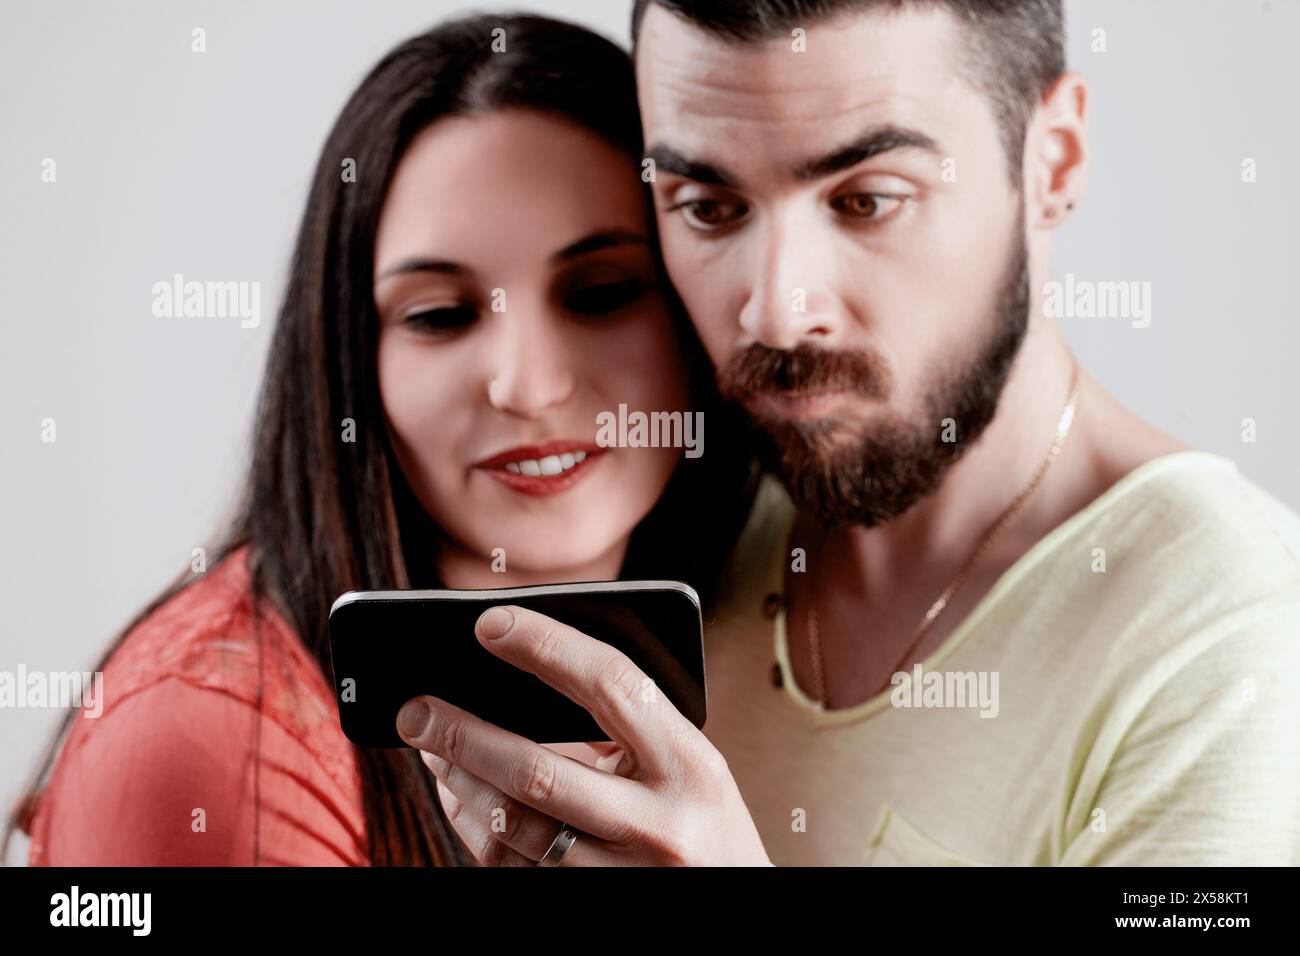 Mann und Frau genießen Inhalte auf einem Smartphone, ihr fröhliches Lachen und sein fokussierter Ausdruck heben einen Moment der gemeinsamen digitalen Interaktion hervor Stockfoto